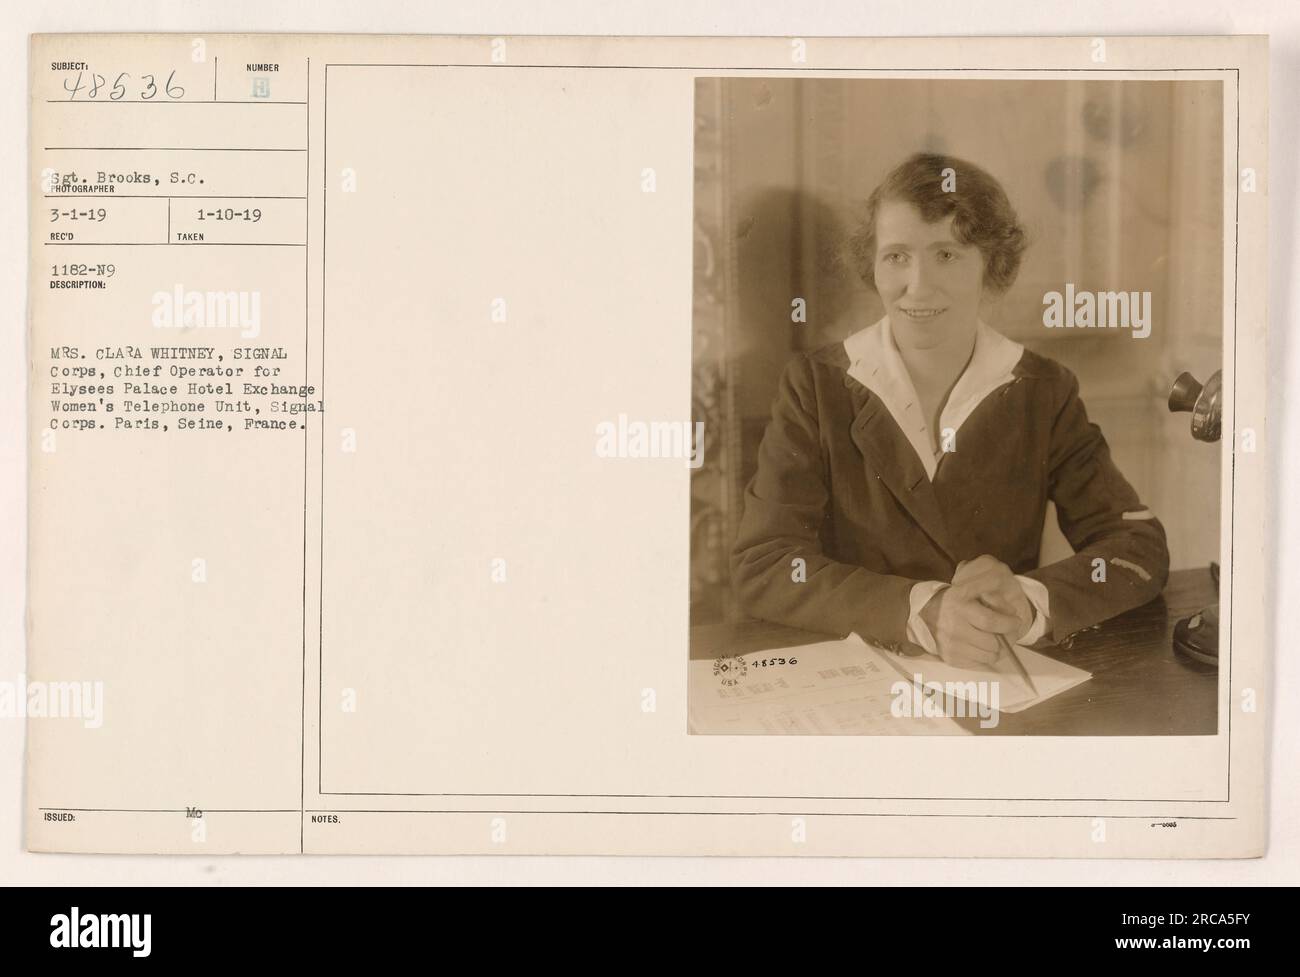 Mrs. Clara Whitney, ein Mitglied der Frauentelefonie des Signalkorps, ist auf diesem Foto abgebildet, das am 10. Januar 1919 in Paris, Frankreich, aufgenommen wurde. Sie ist die Chefin der Elysées Palace Hotel Exchange im Signalkorps. Dieses Foto erhielt Sergeant Brooks am 1. März 1919. Stockfoto